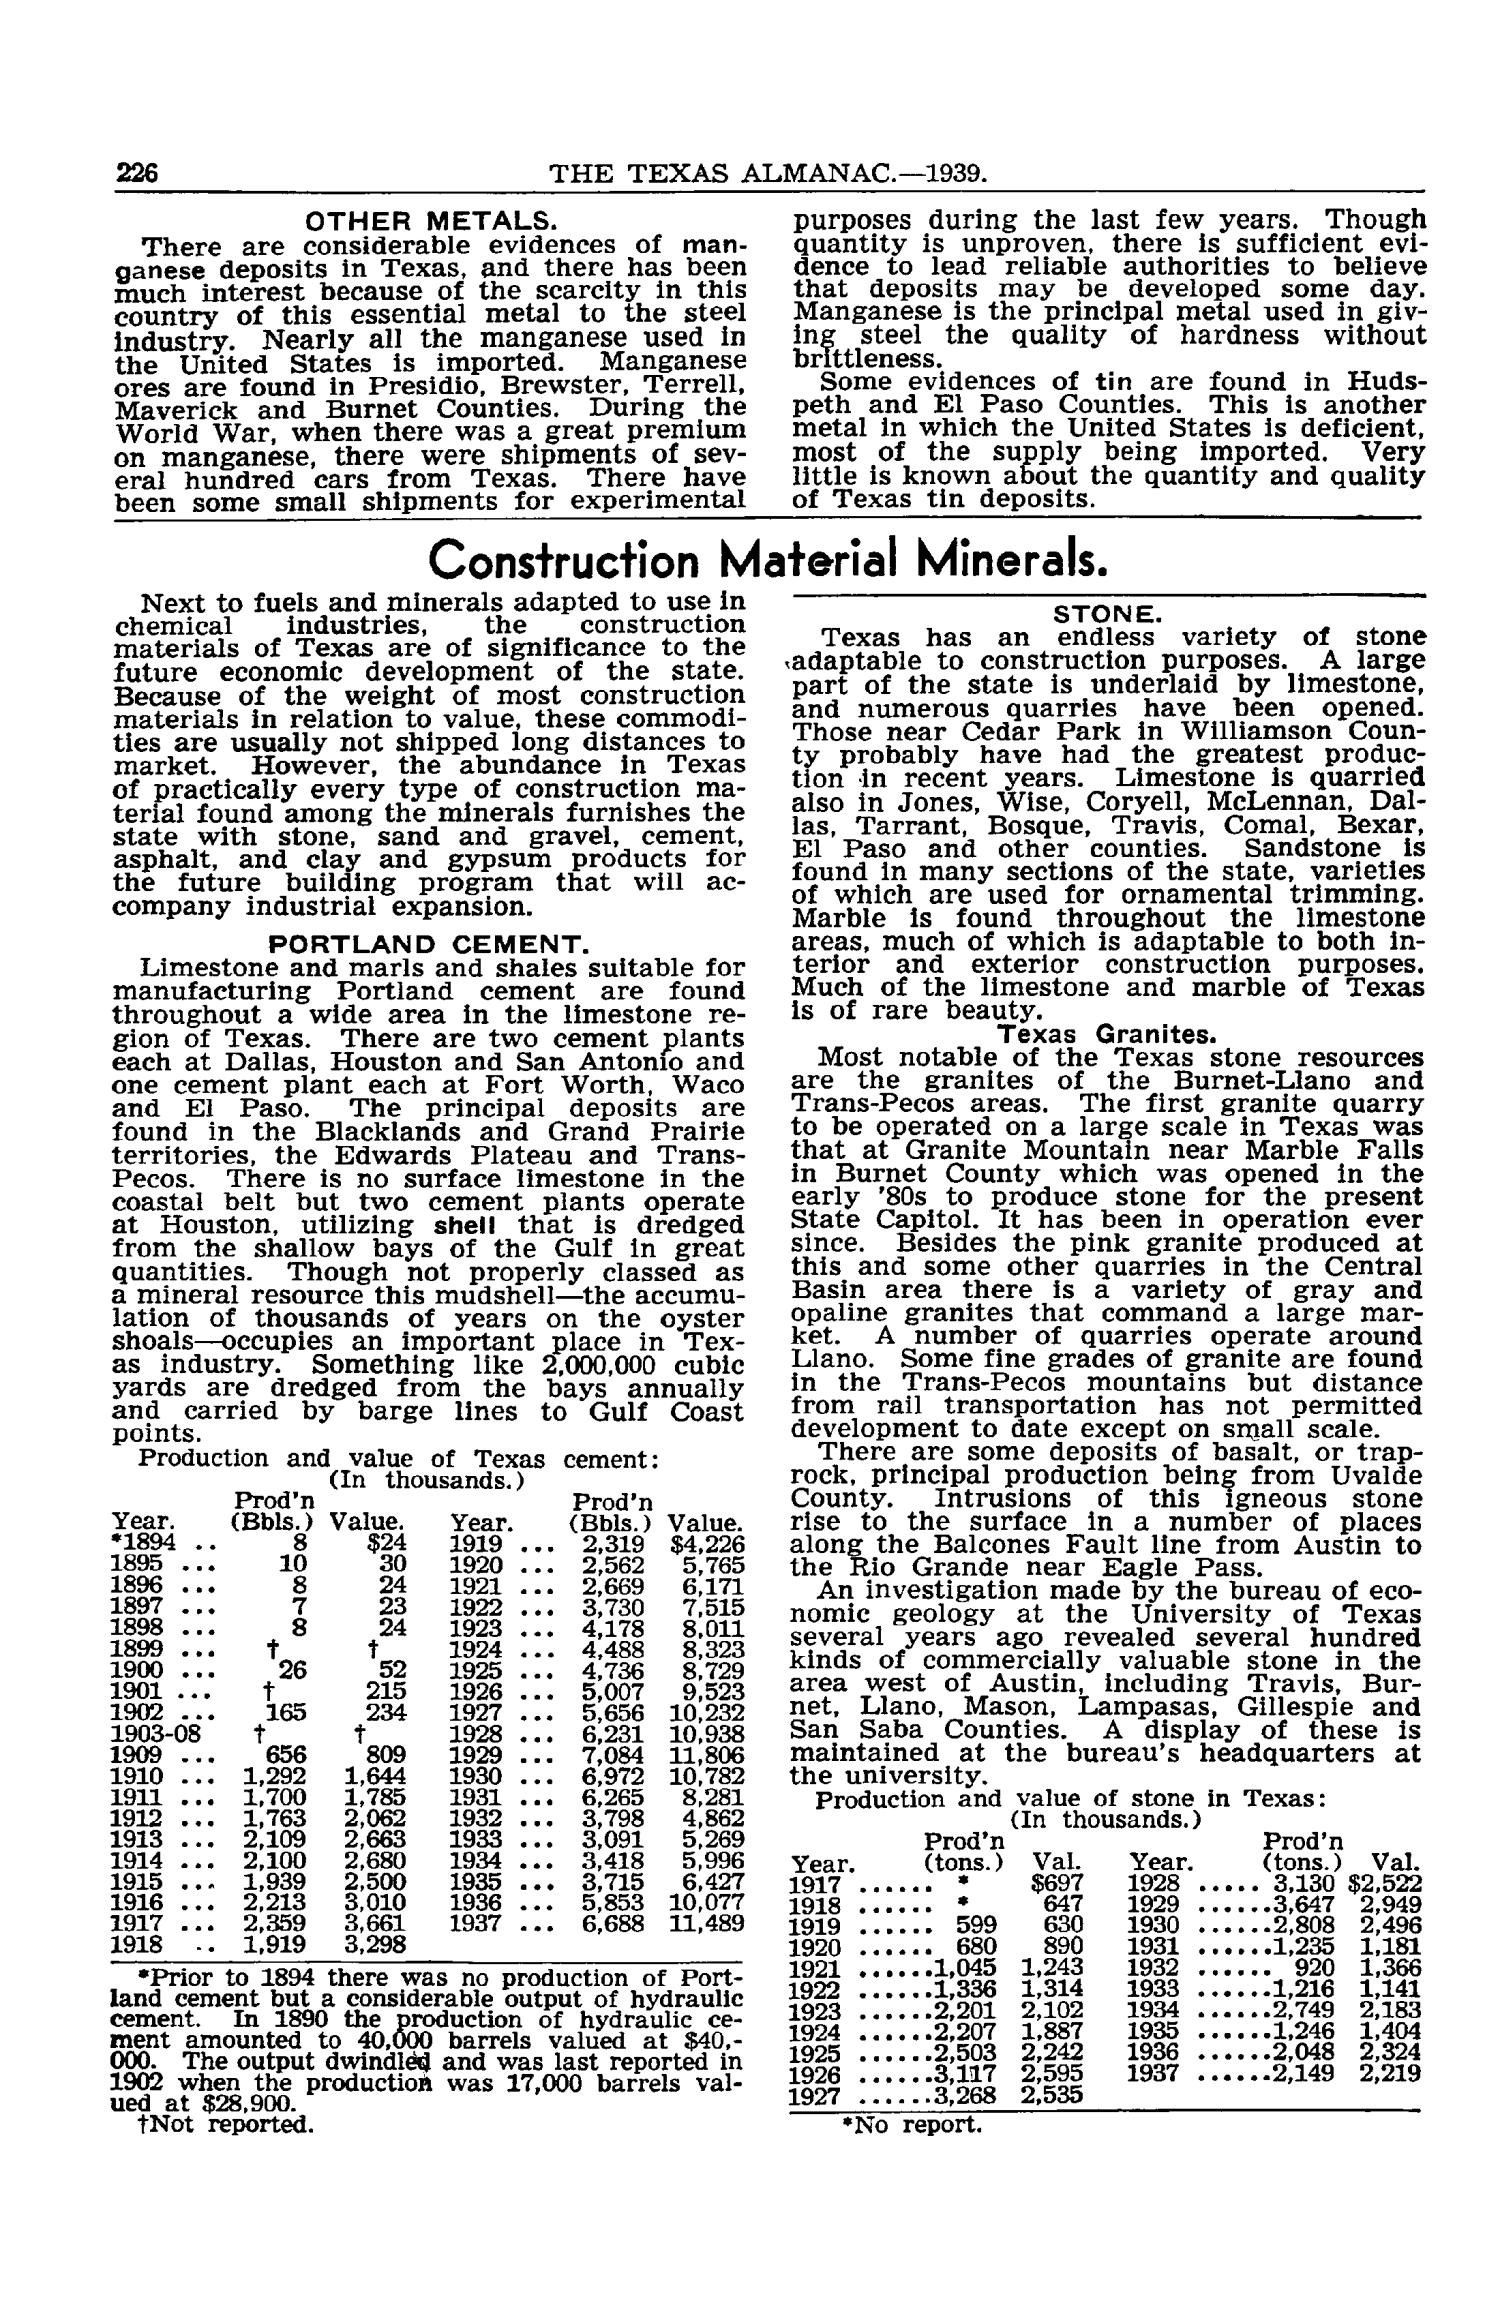 Texas Almanac, 1939-1940
                                                
                                                    226
                                                